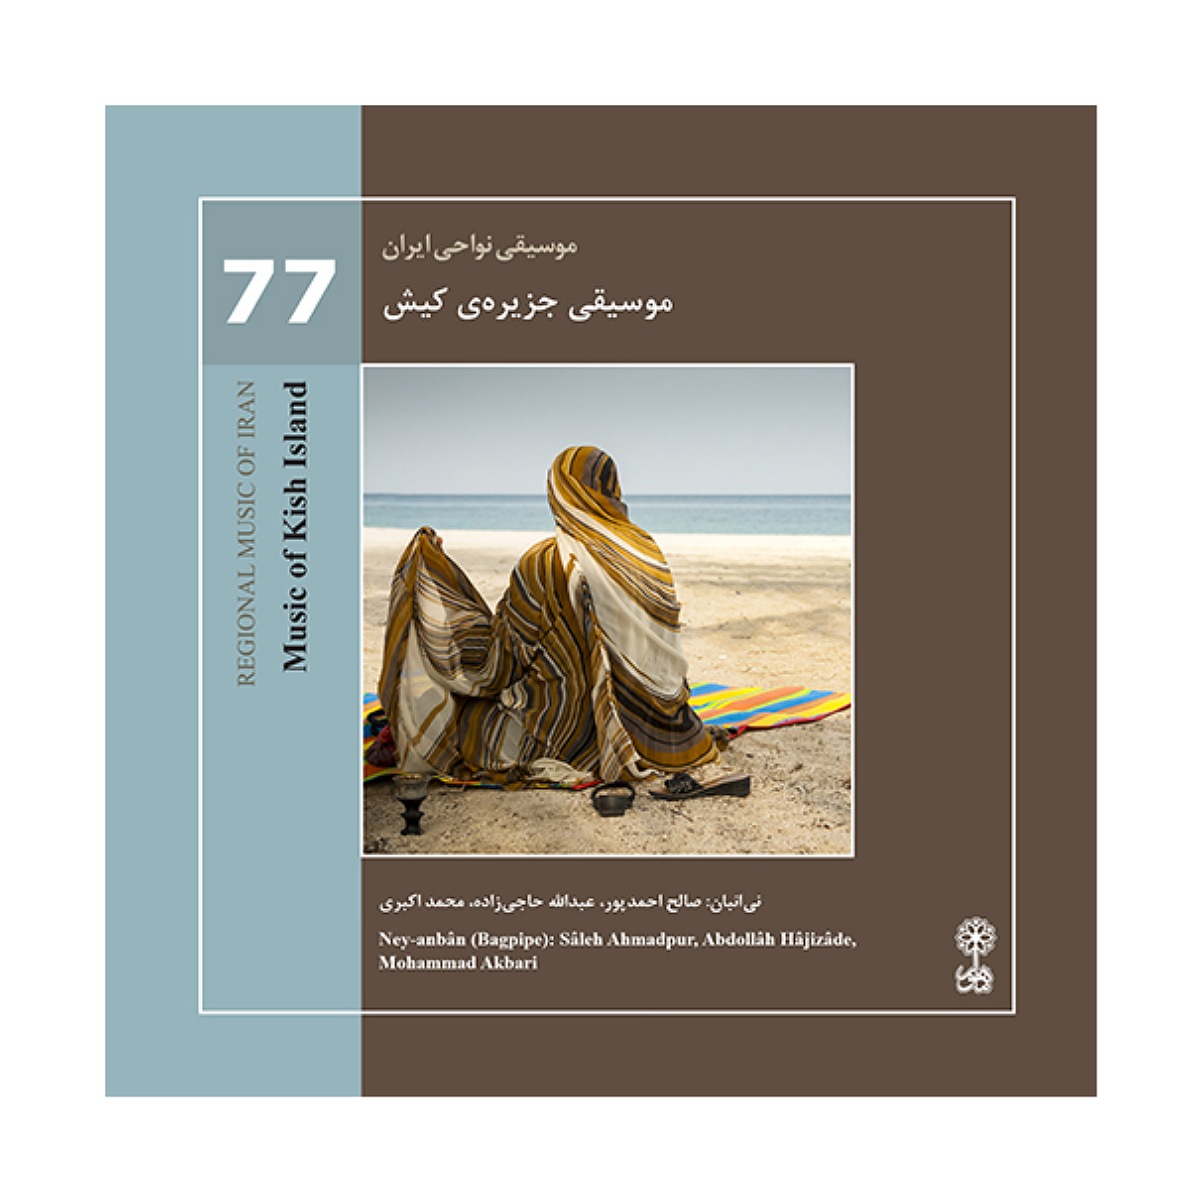 آلبوم موسیقی جزیره‌ی کیش اثر صالح احمد پور